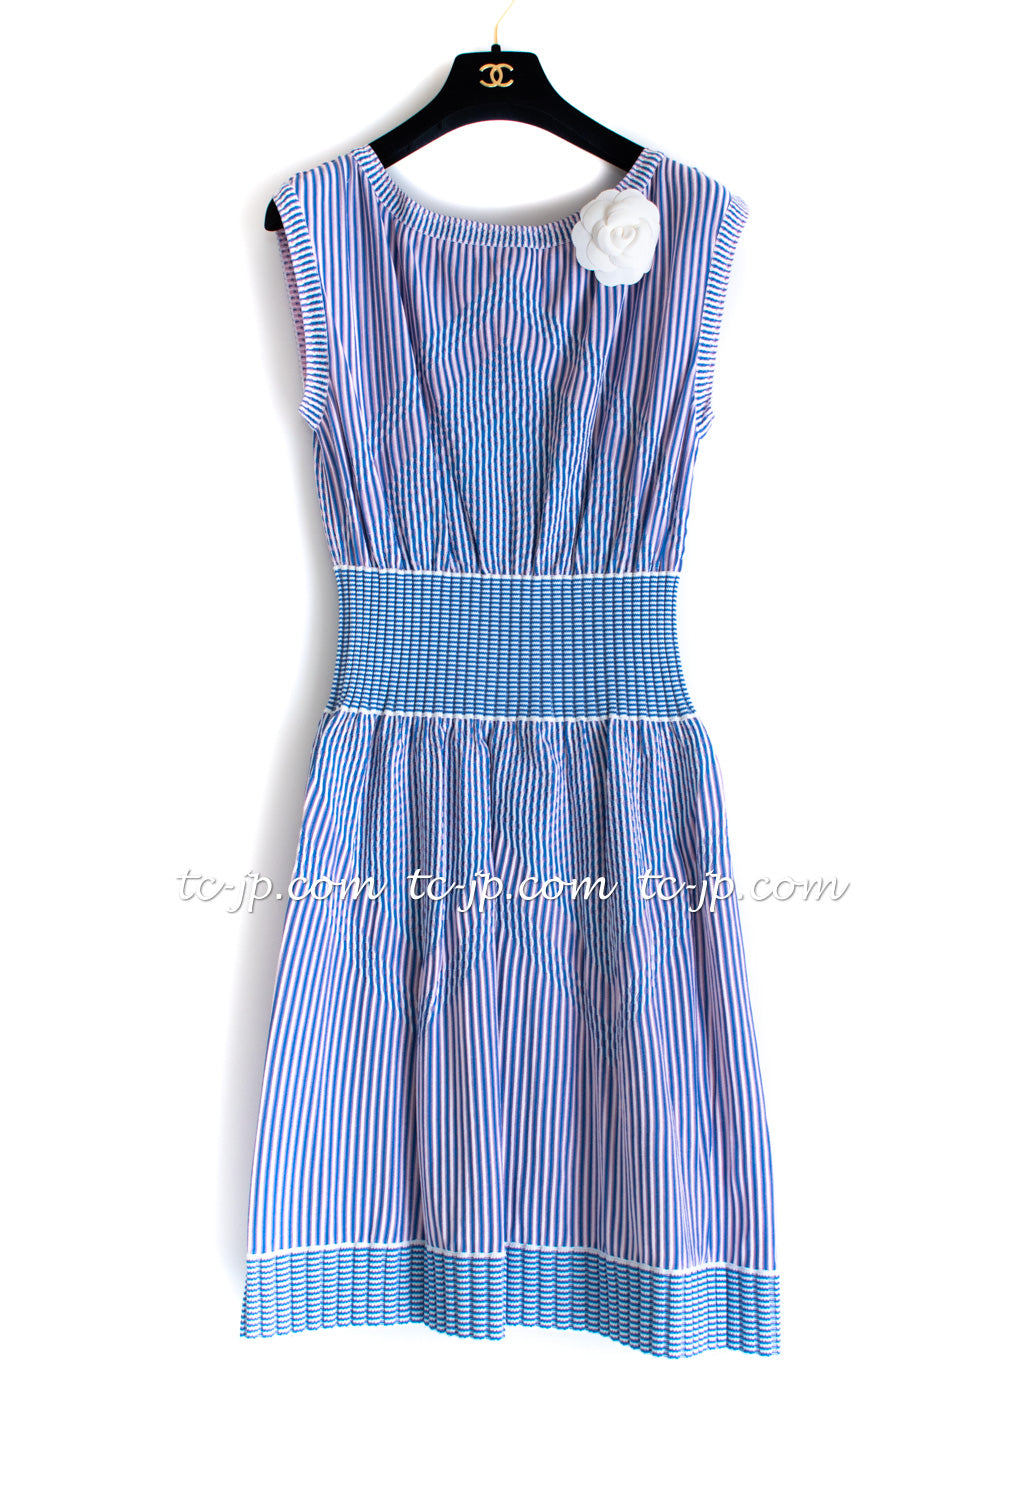 CHANEL 14S Knit Boat Neck Stripe Dress 40 42 シャネル ブルー・ストライプ・ワンピース 即発